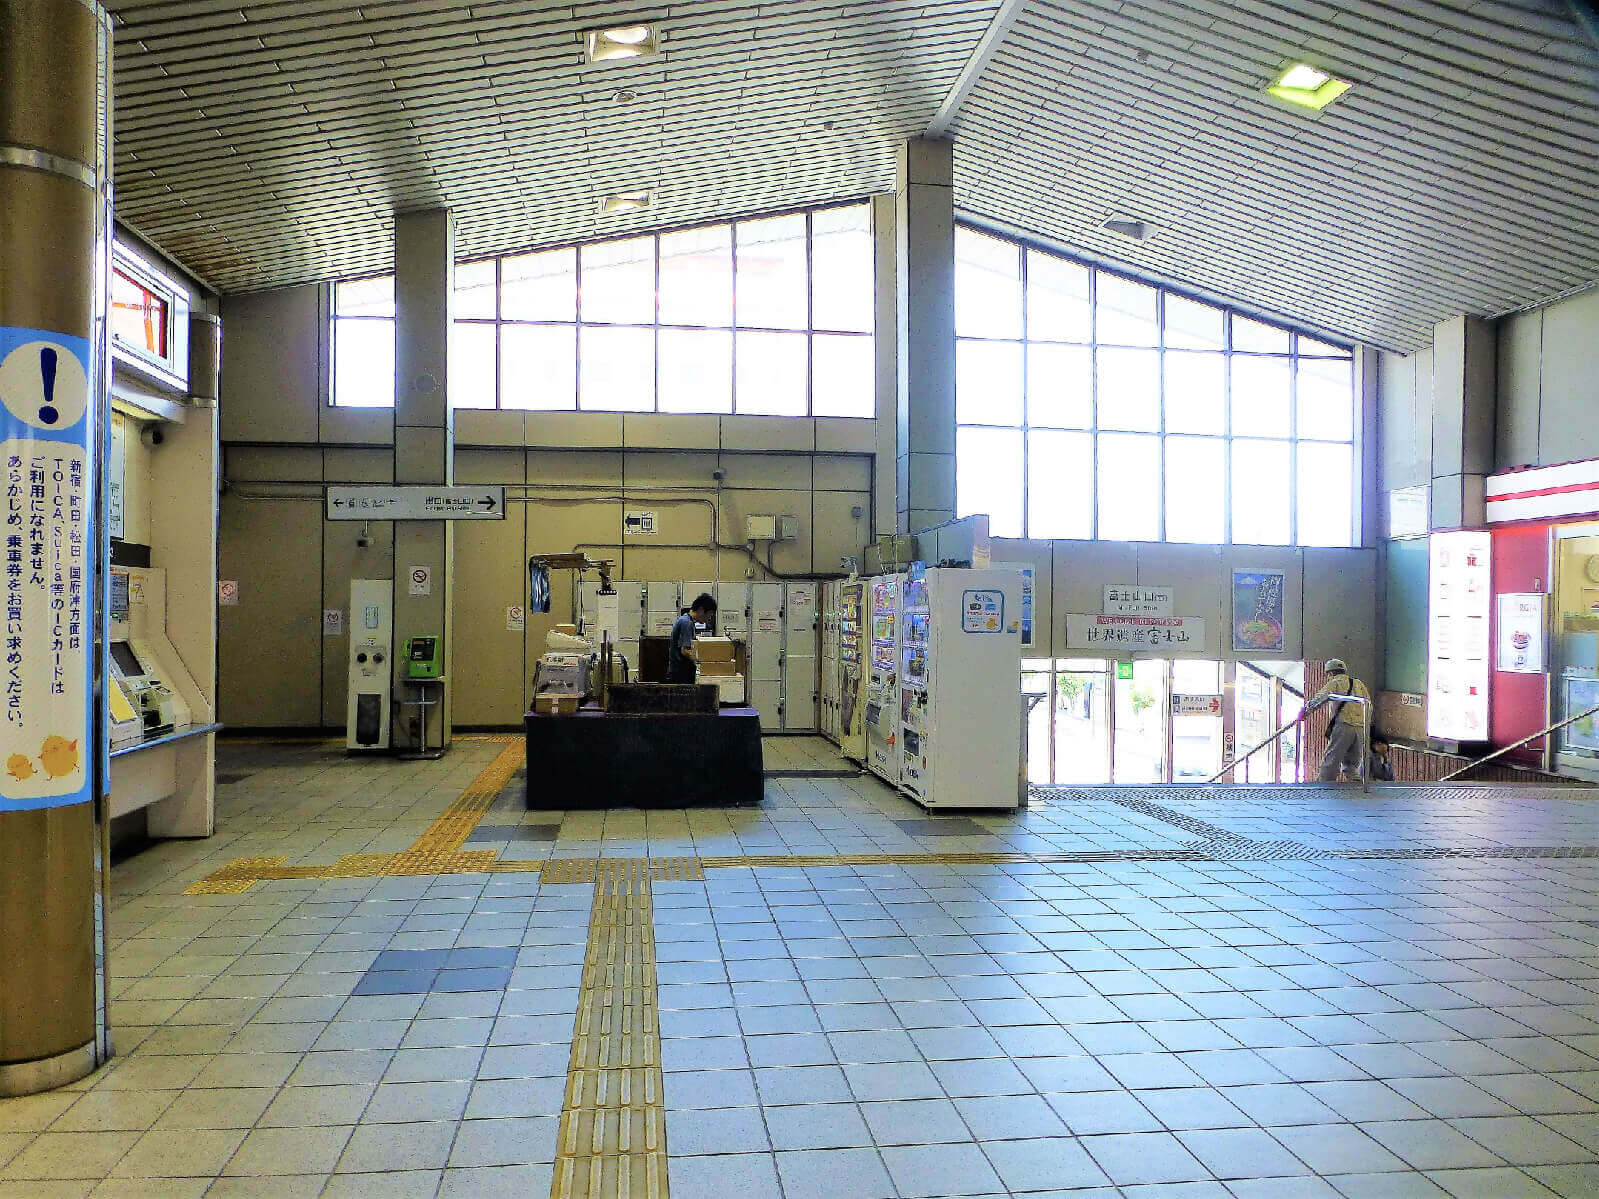 御殿場駅 富士山口1階にエレベーターで下る場合、改札を出てまず左折